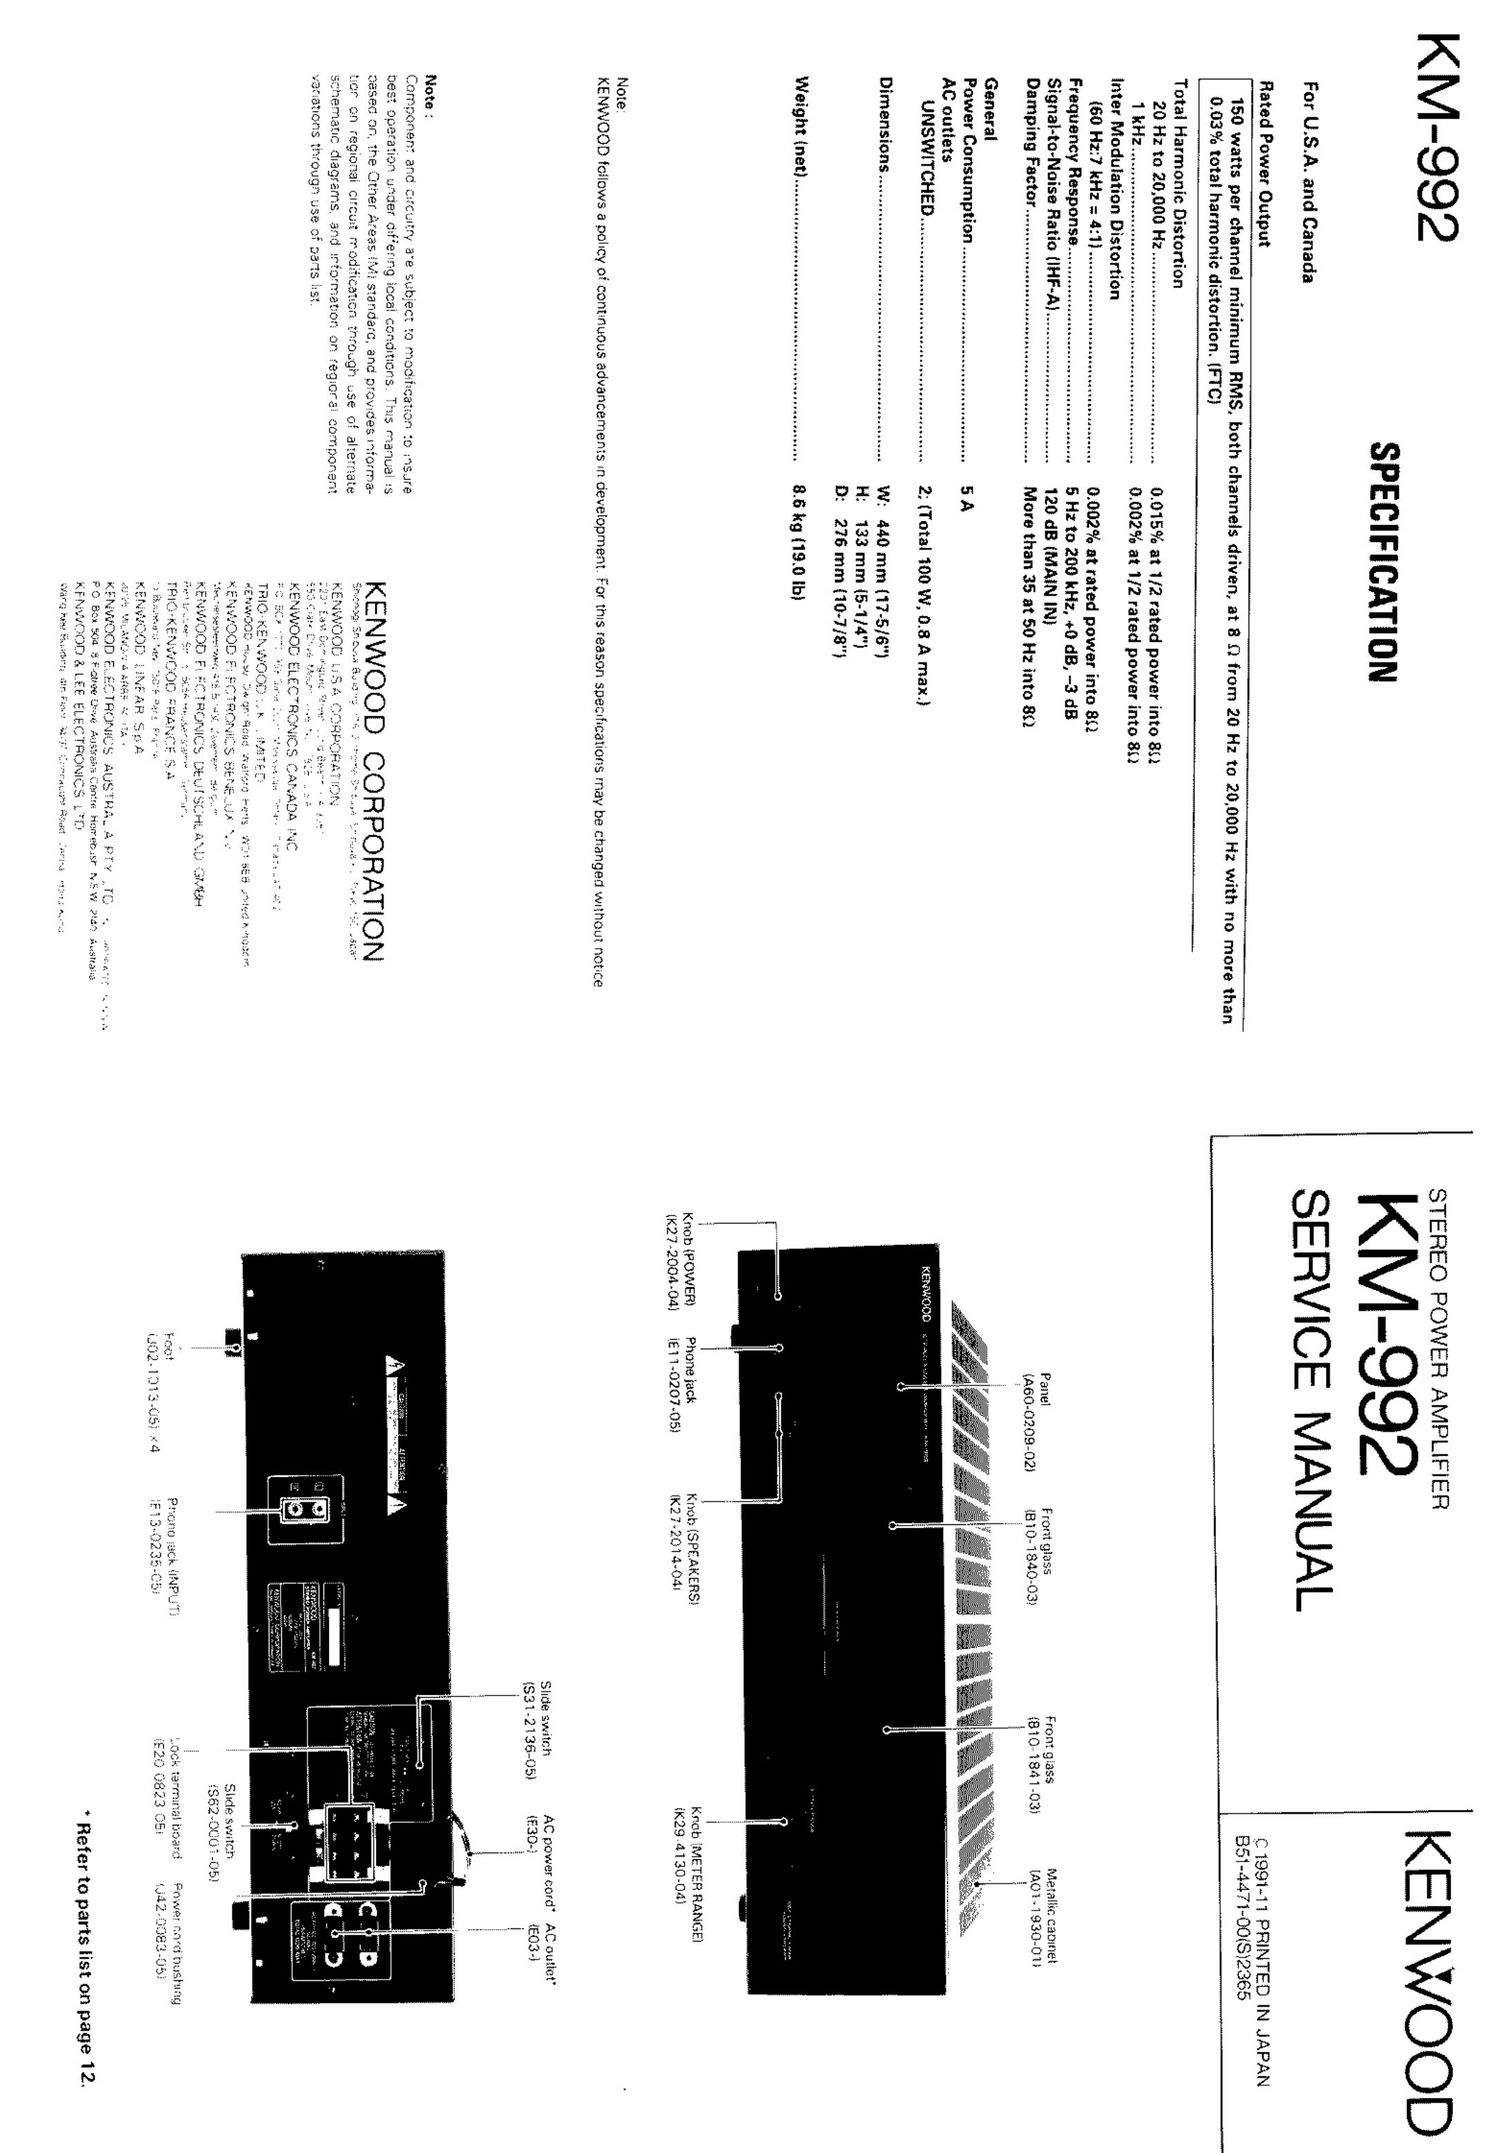 Kenwood KM 992 Service Manual